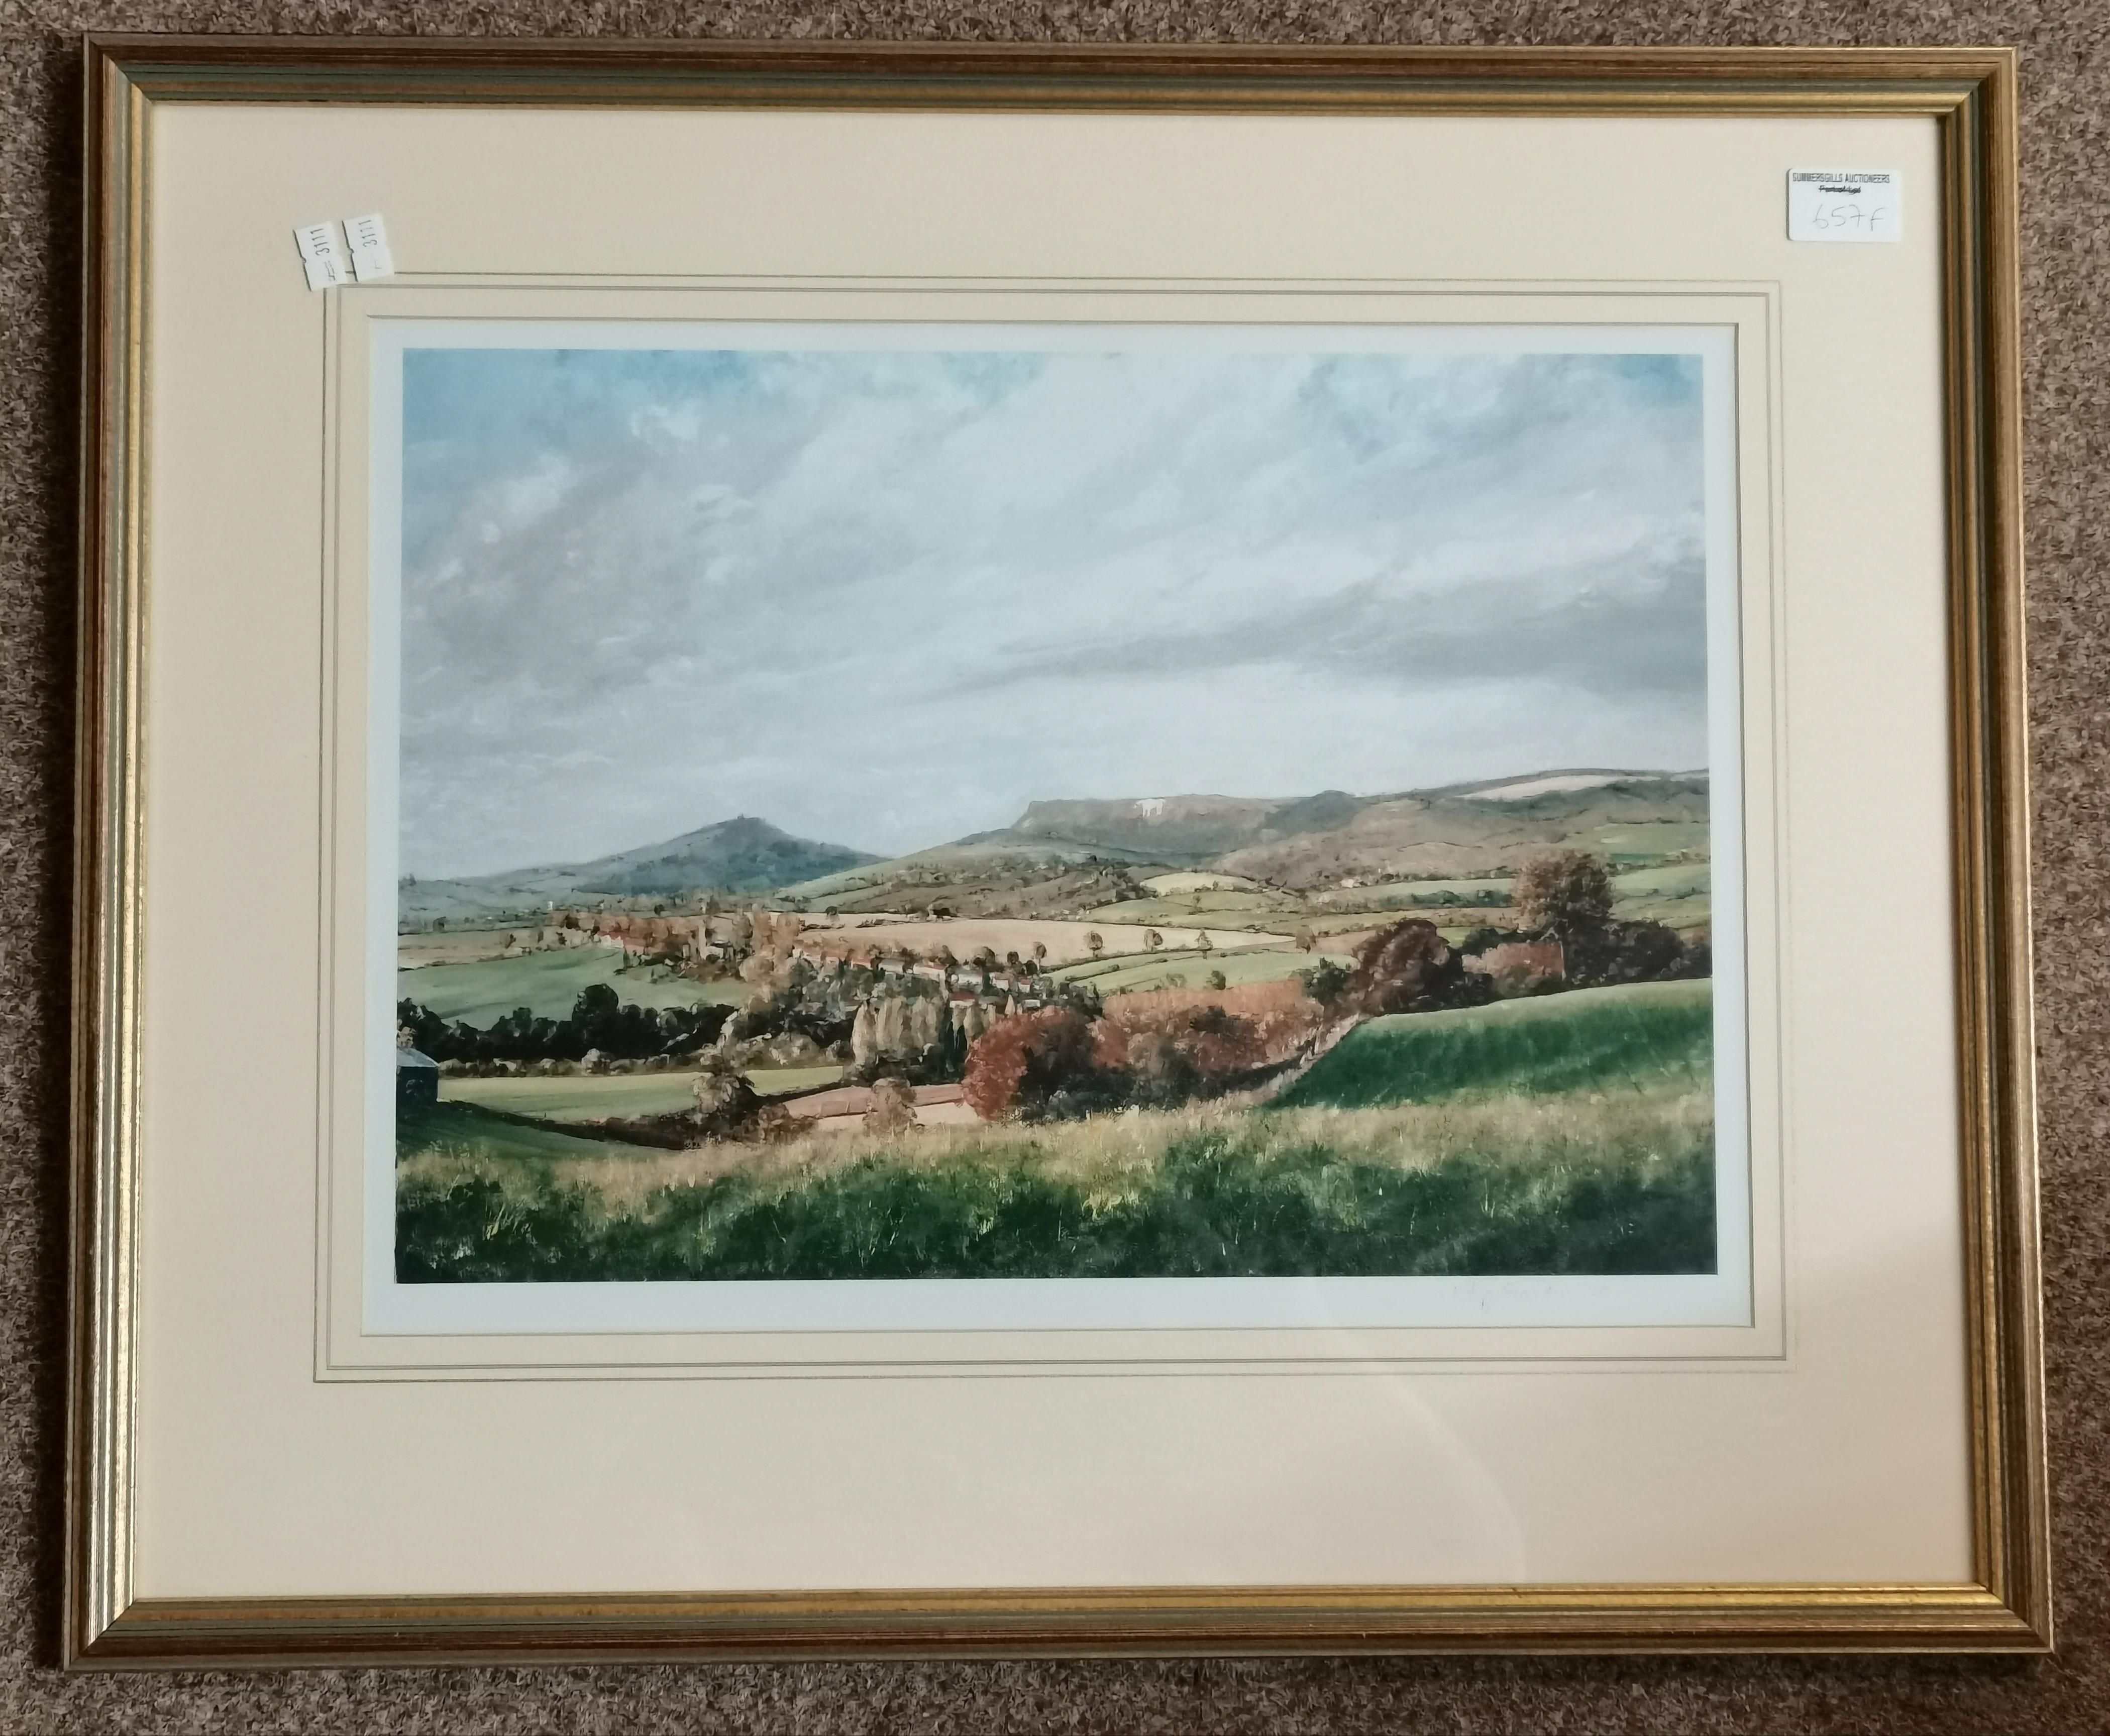 The White Horse, Kilburn, a framed print